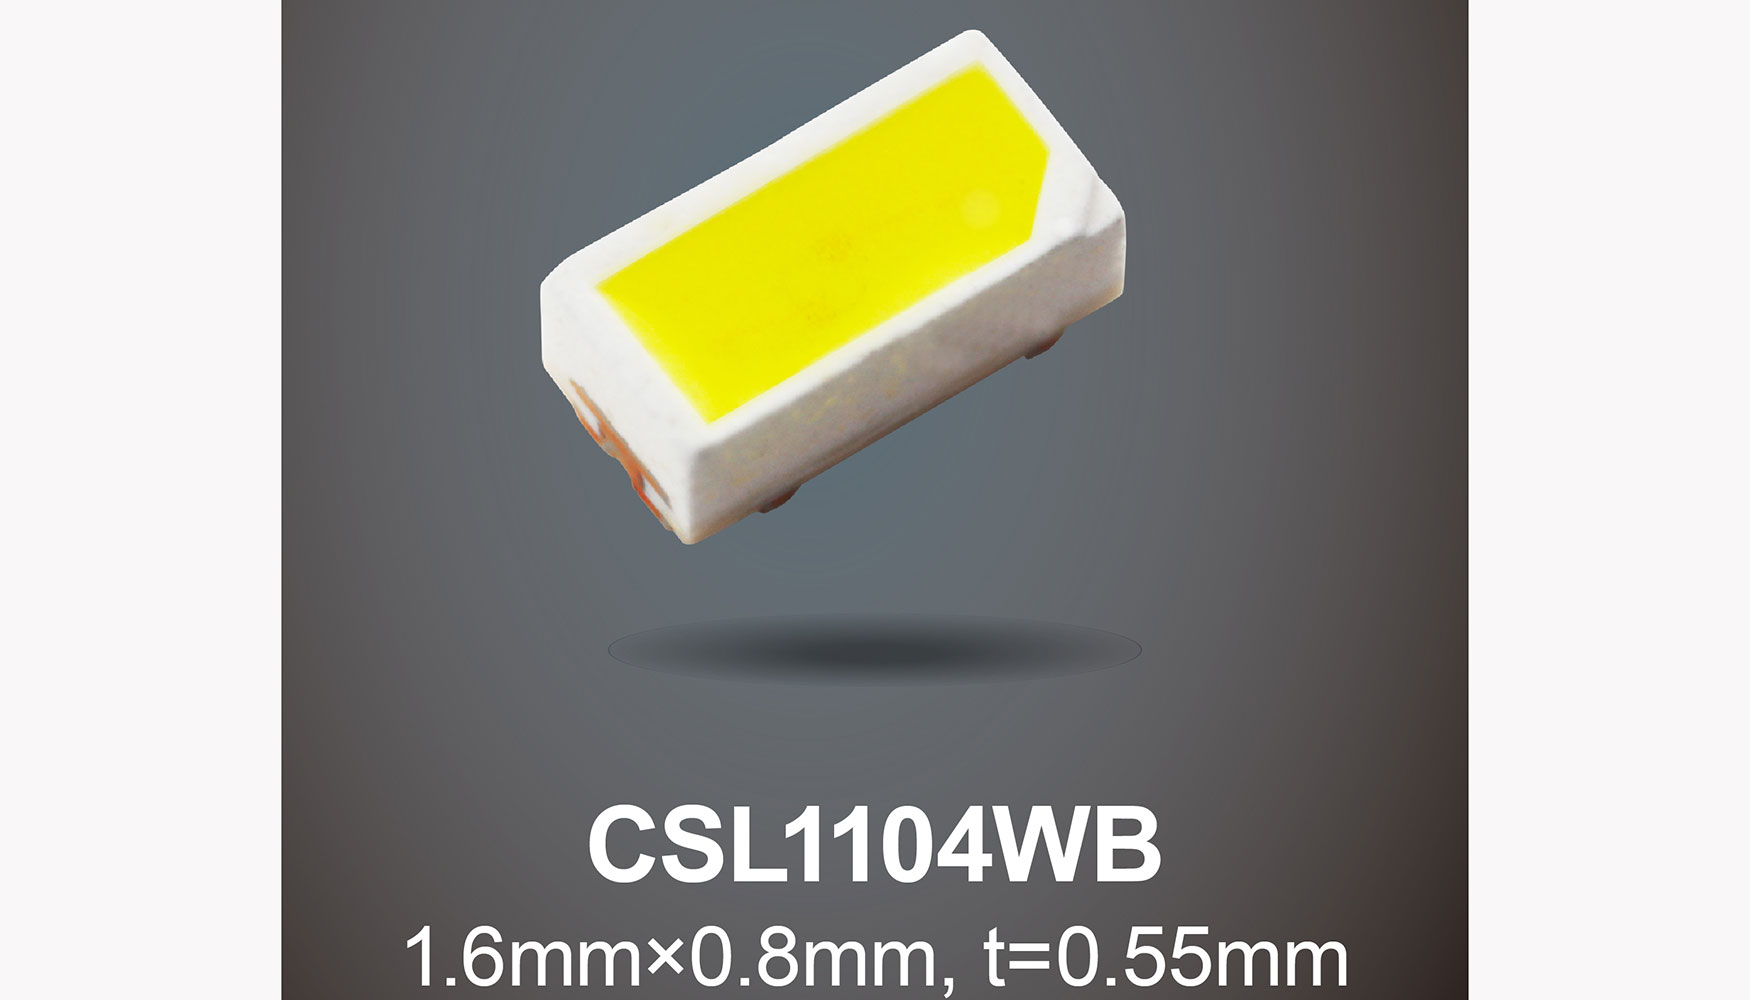 La serie CSL1104WB alcanza una alta intensidad luminosa de 2,0 cd en un tamao ultracompacto de 1608